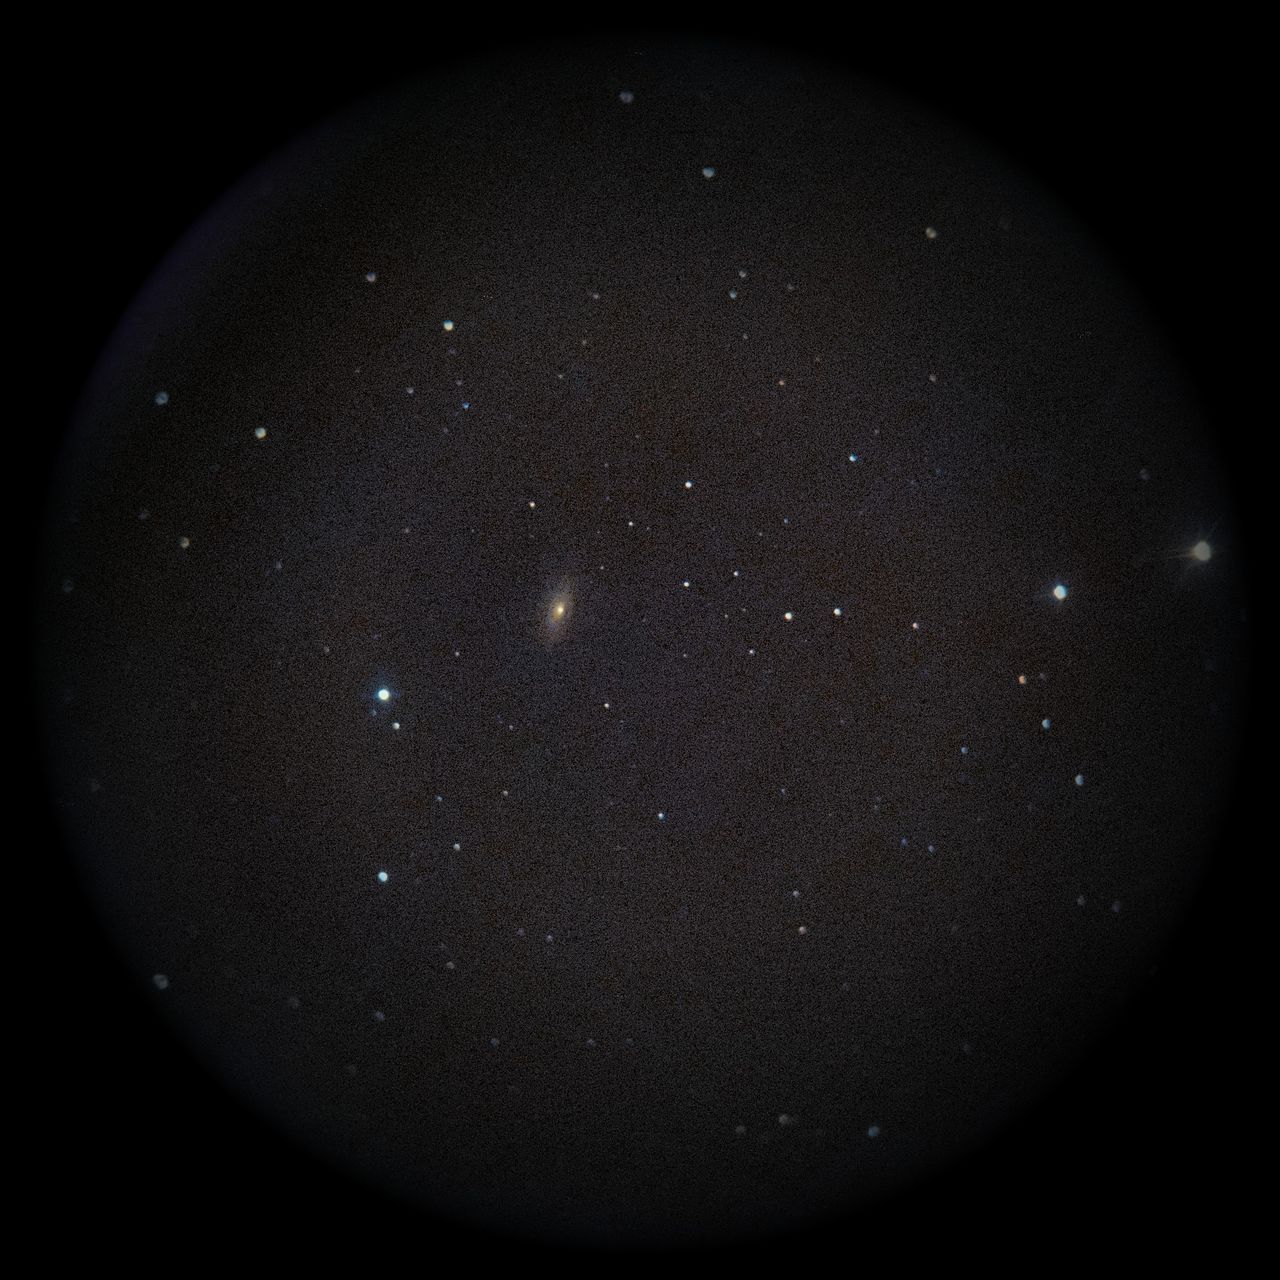 Image of NGC3521